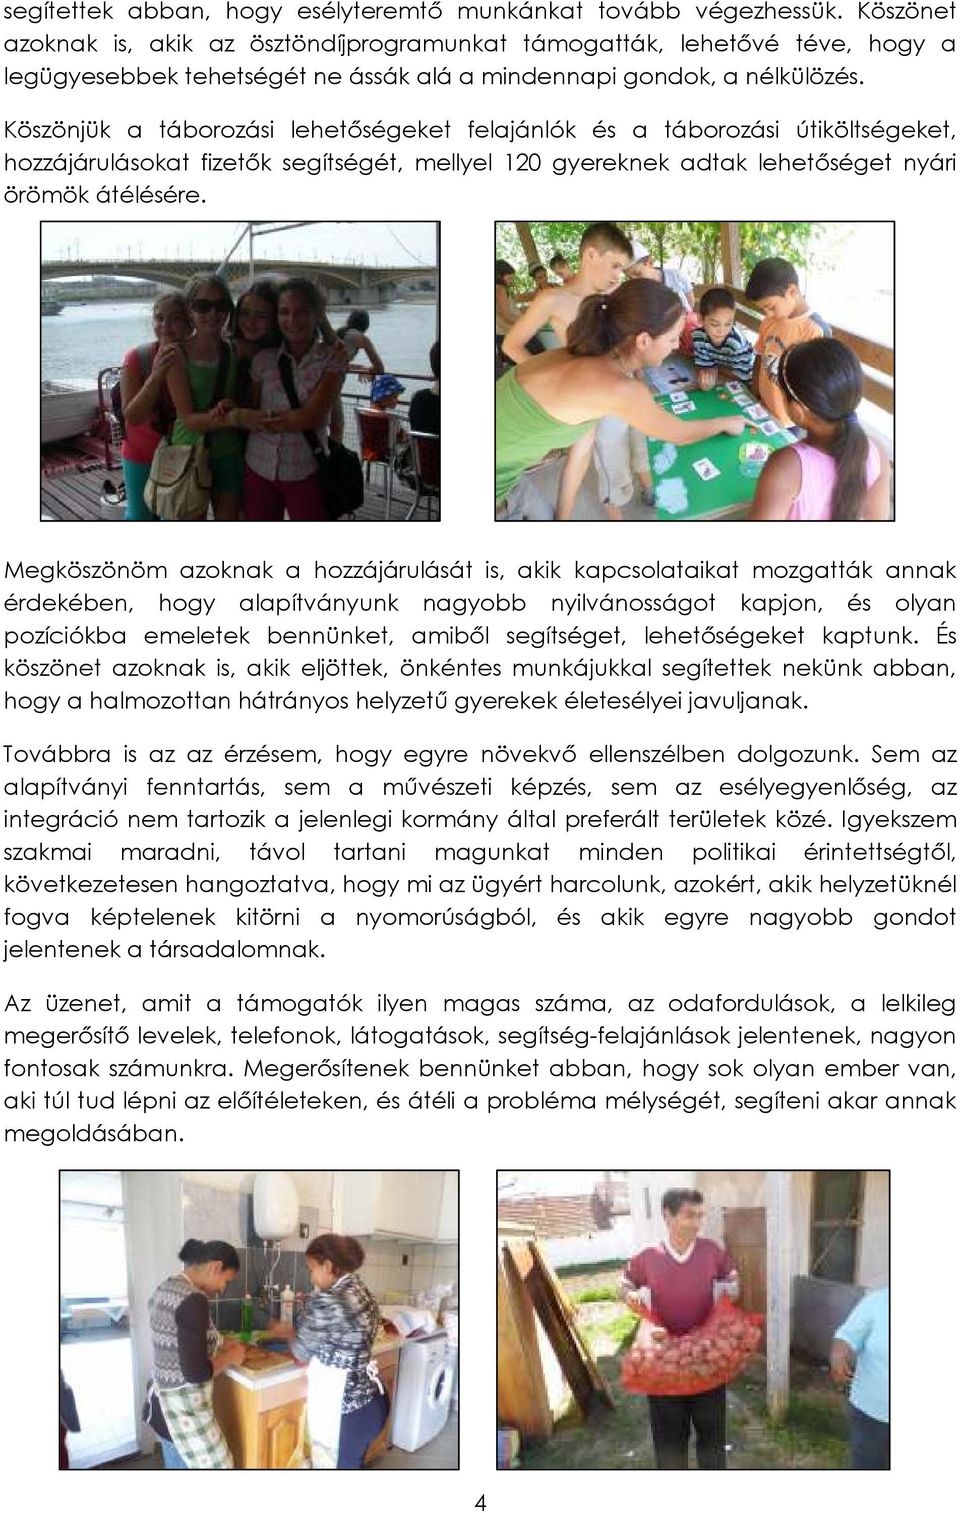 Köszönjük a táborozási lehetıségeket felajánlók és a táborozási útiköltségeket, hozzájárulásokat fizetık segítségét, mellyel 120 gyereknek adtak lehetıséget nyári örömök átélésére.